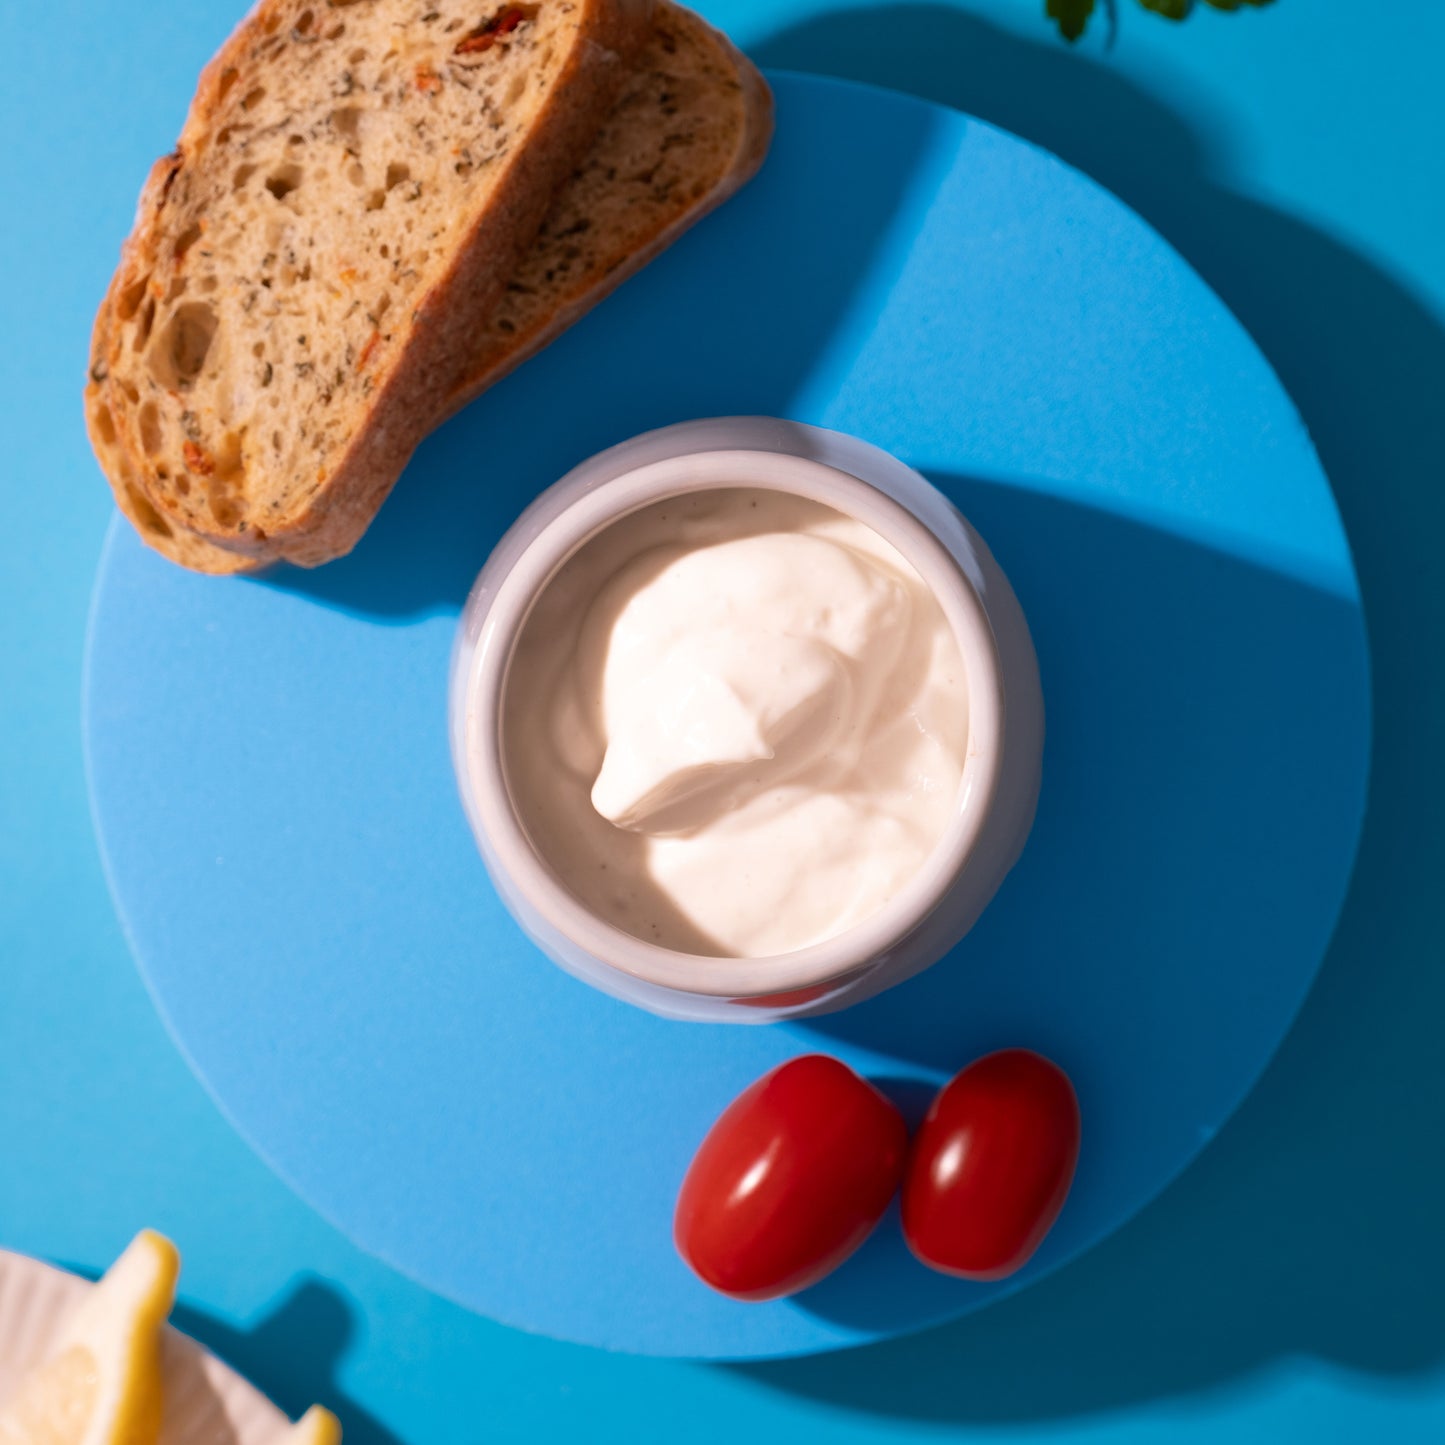 mayo in dipschüssel mit brot & cherrytomaten